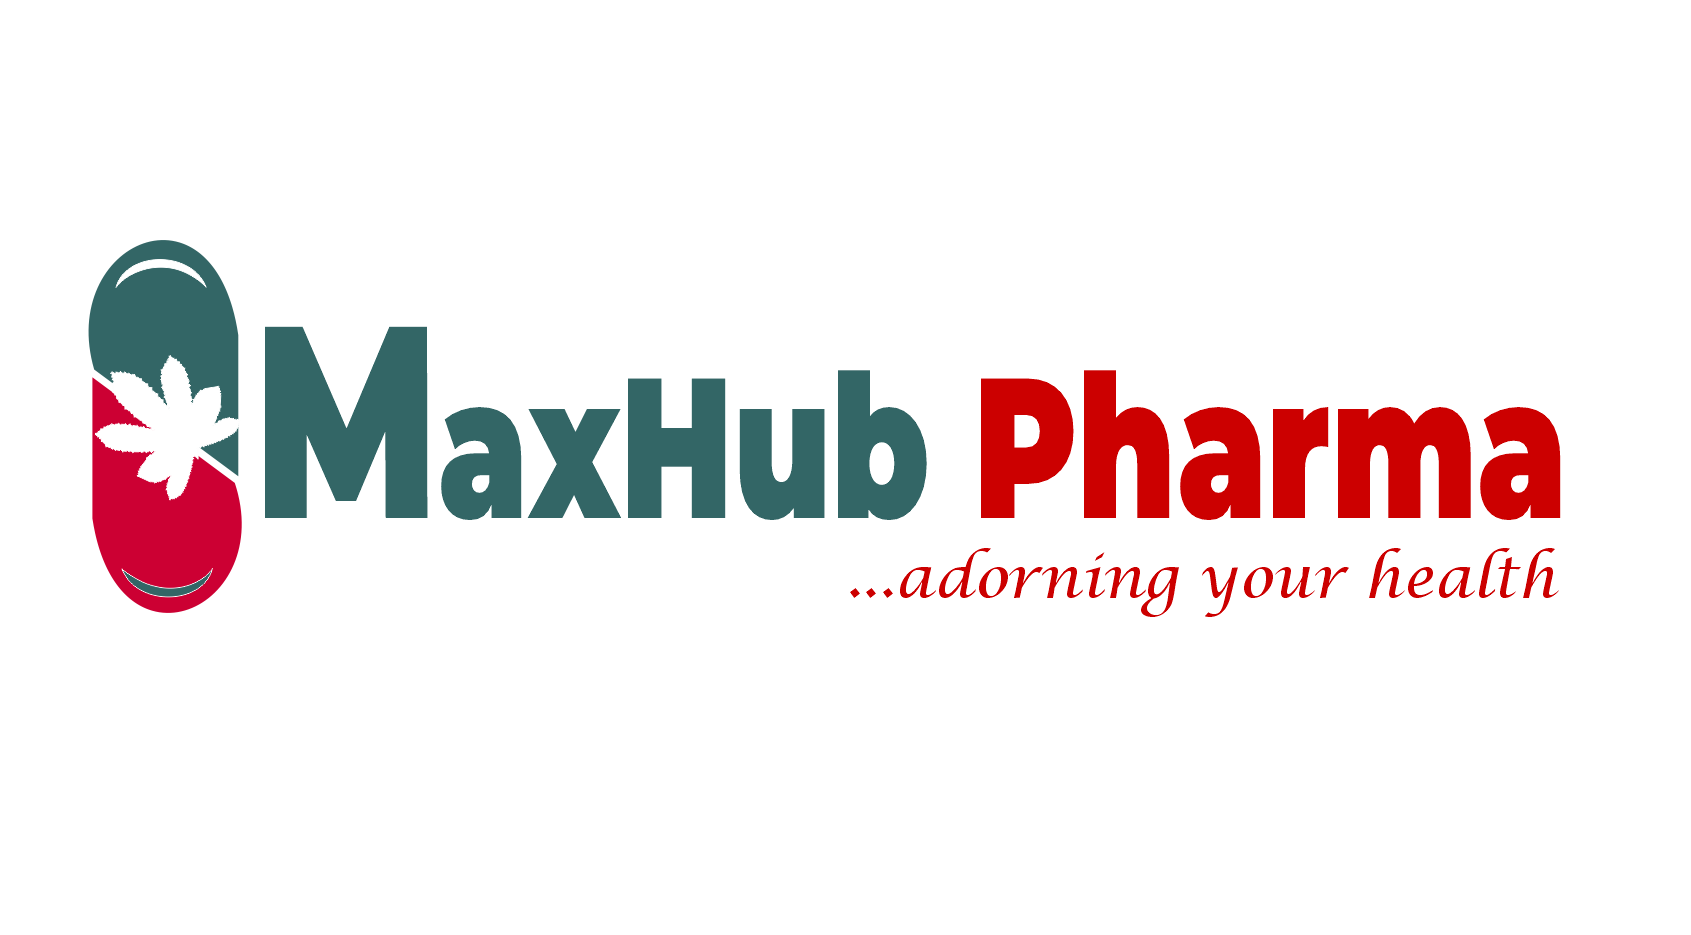 Maxhub Pharmacy